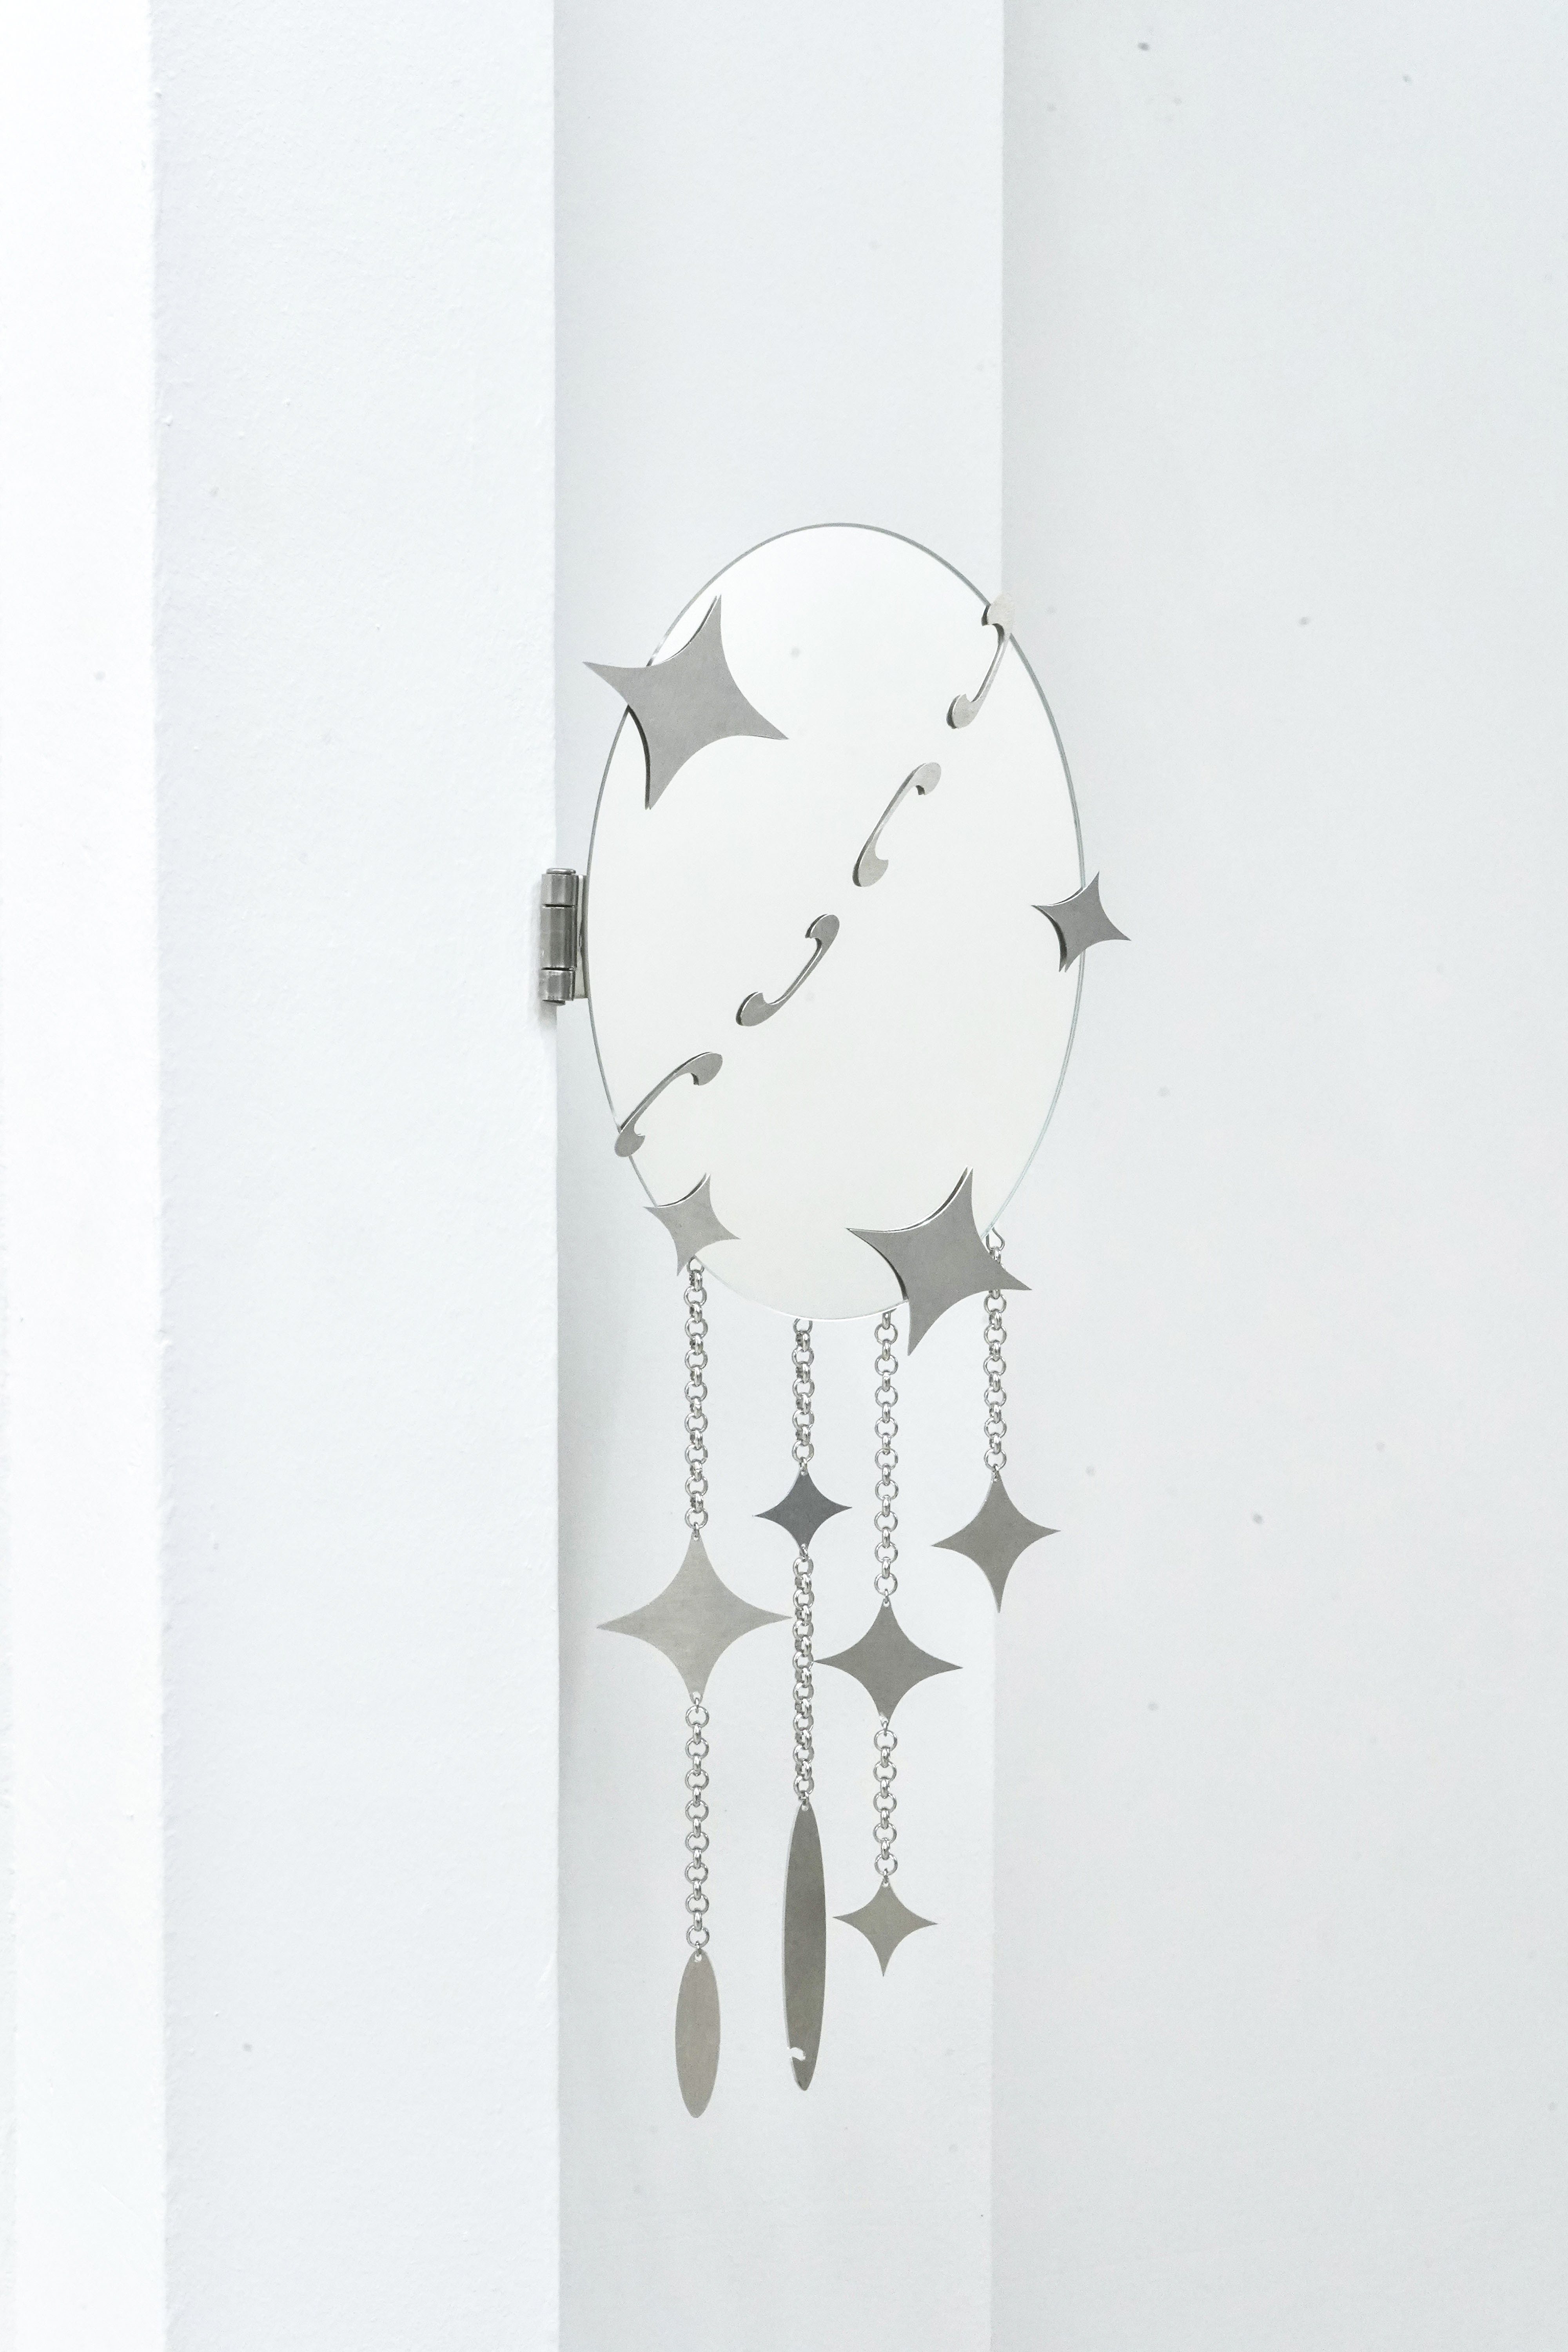 Teller 1 (2022). Mirror, Aluminium, Metal. 13x37.5 cm 